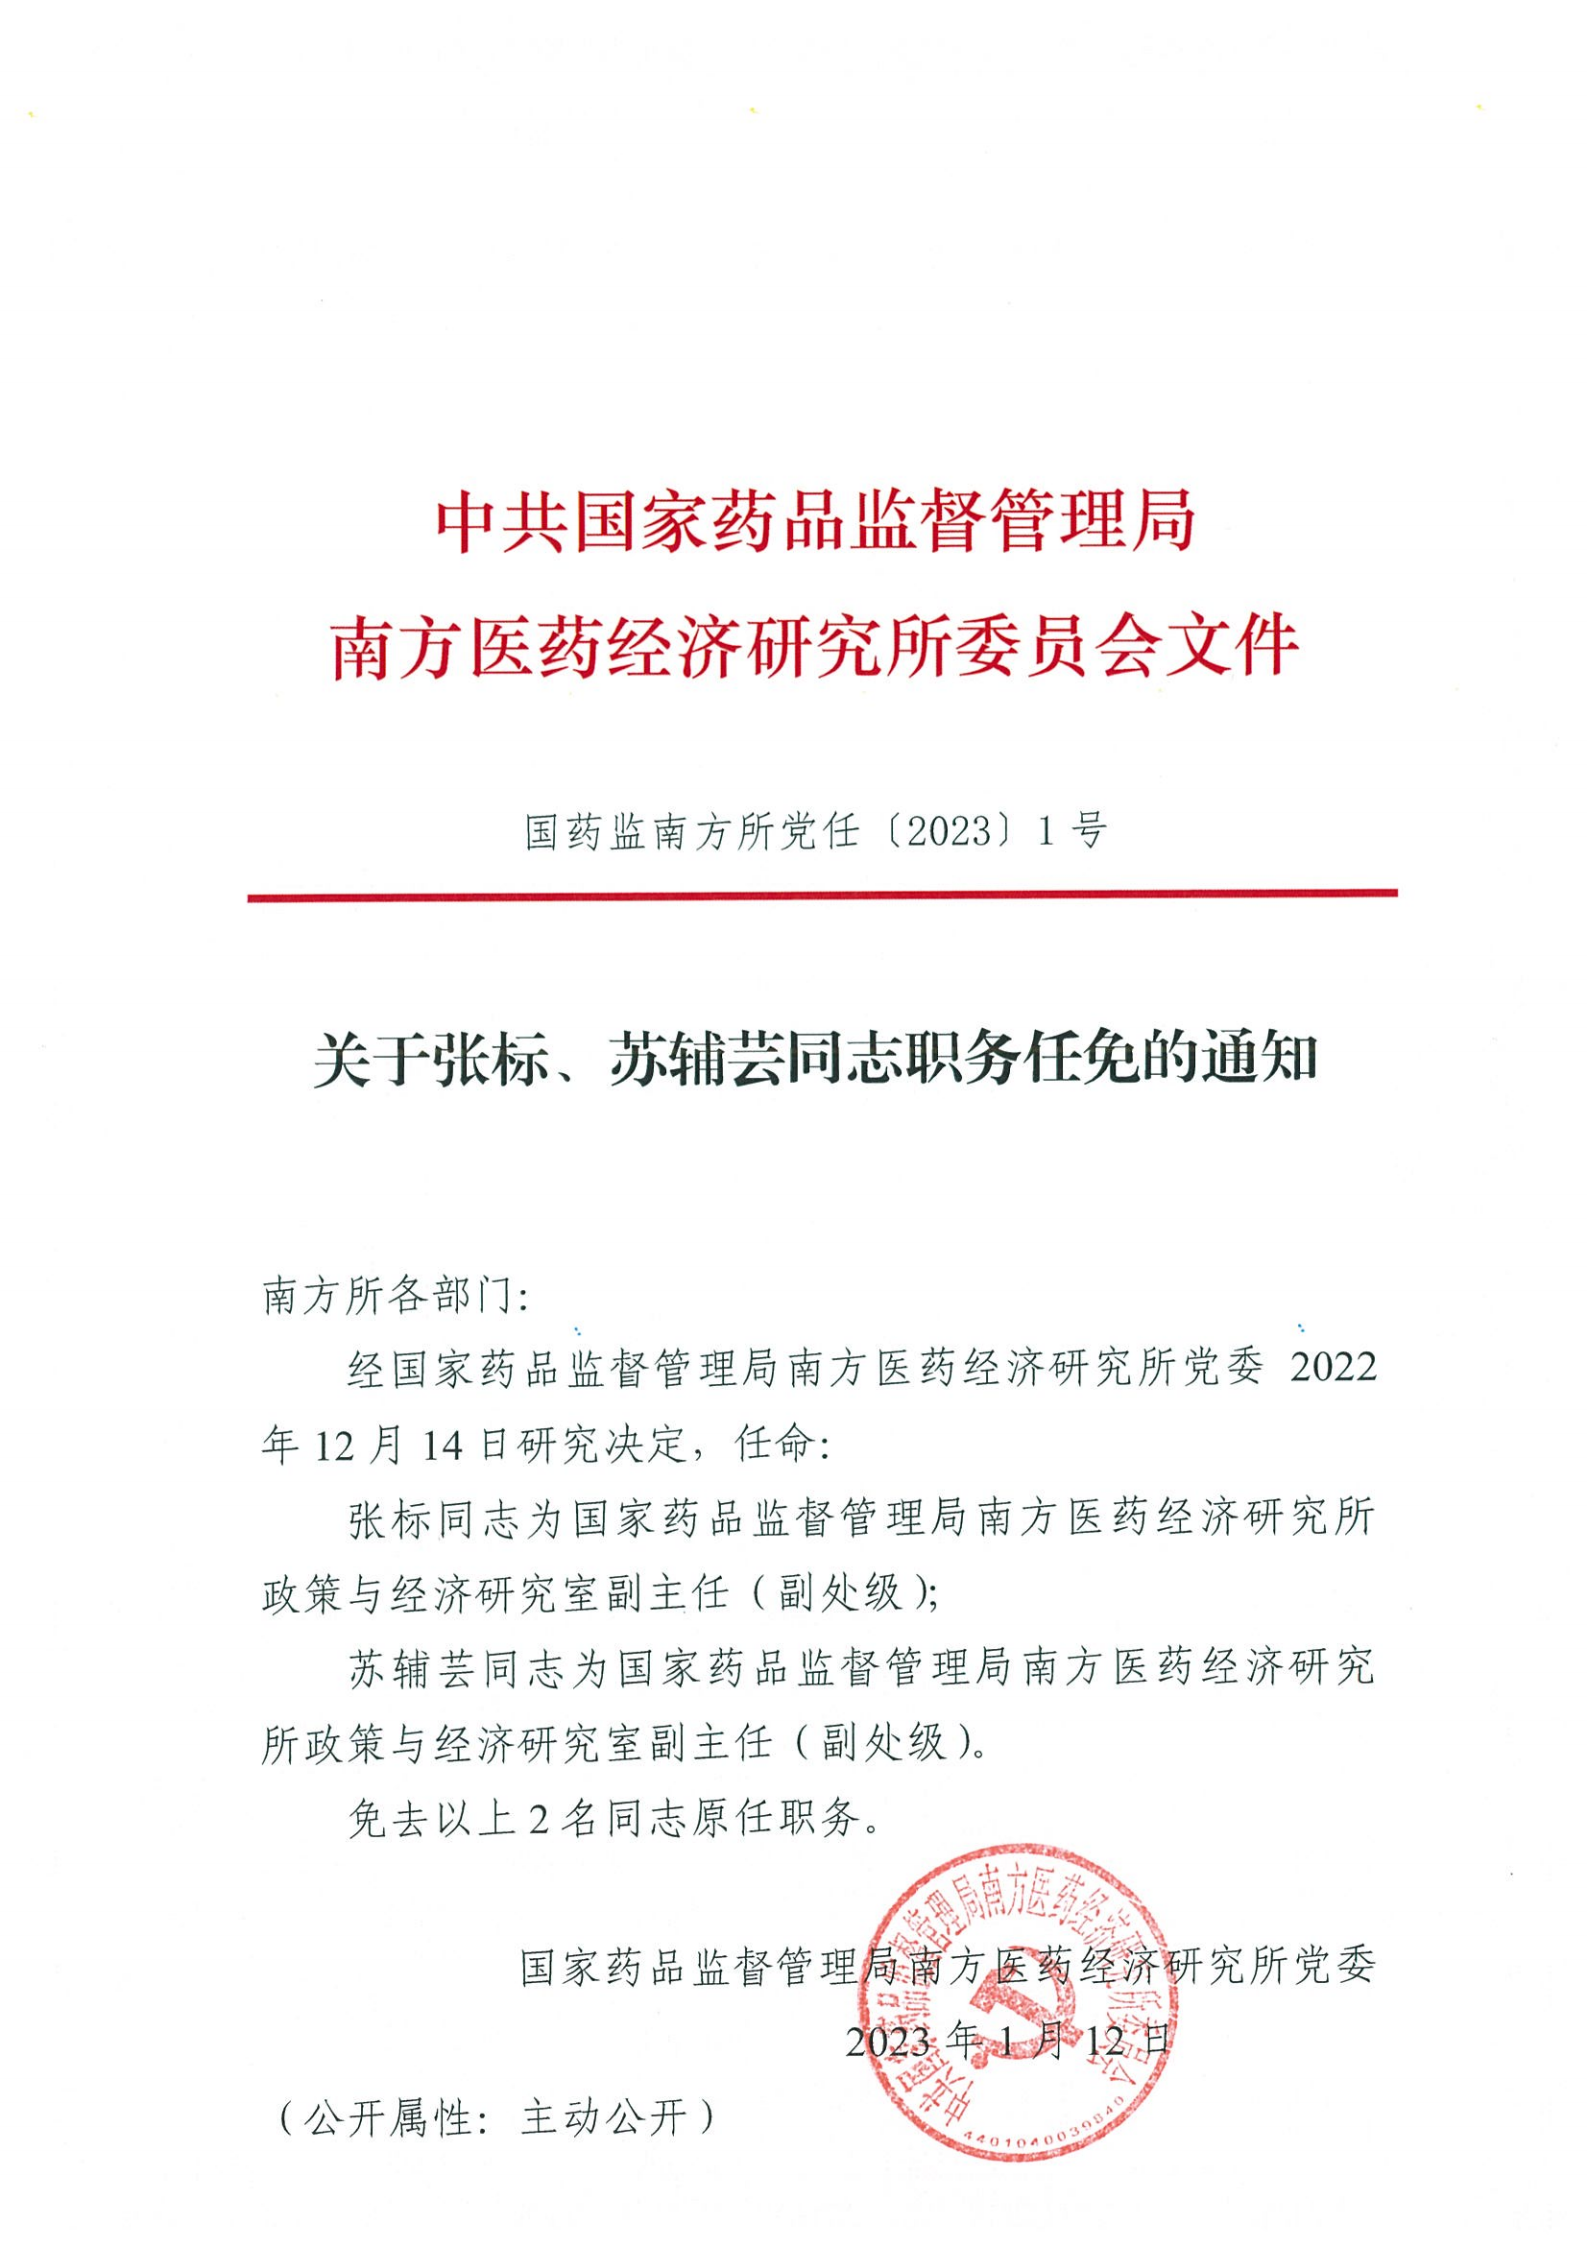 陕西省人民政府发布一批人事任免